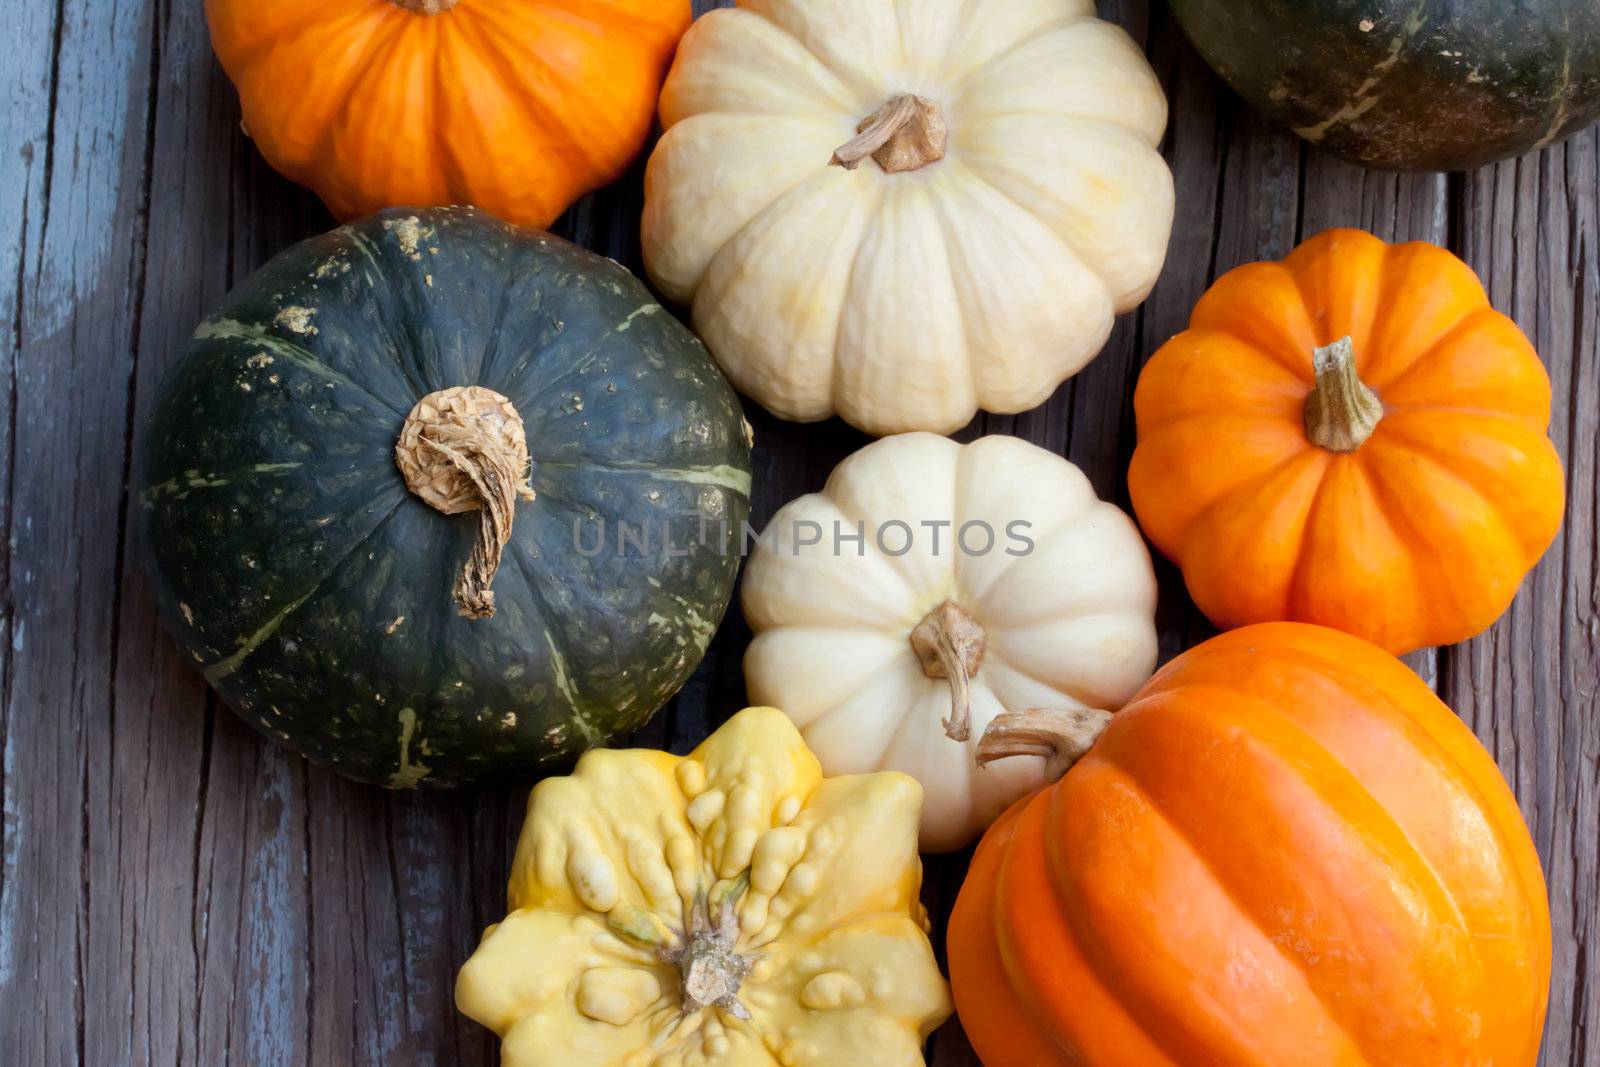 Autumn pumpkins by melpomene